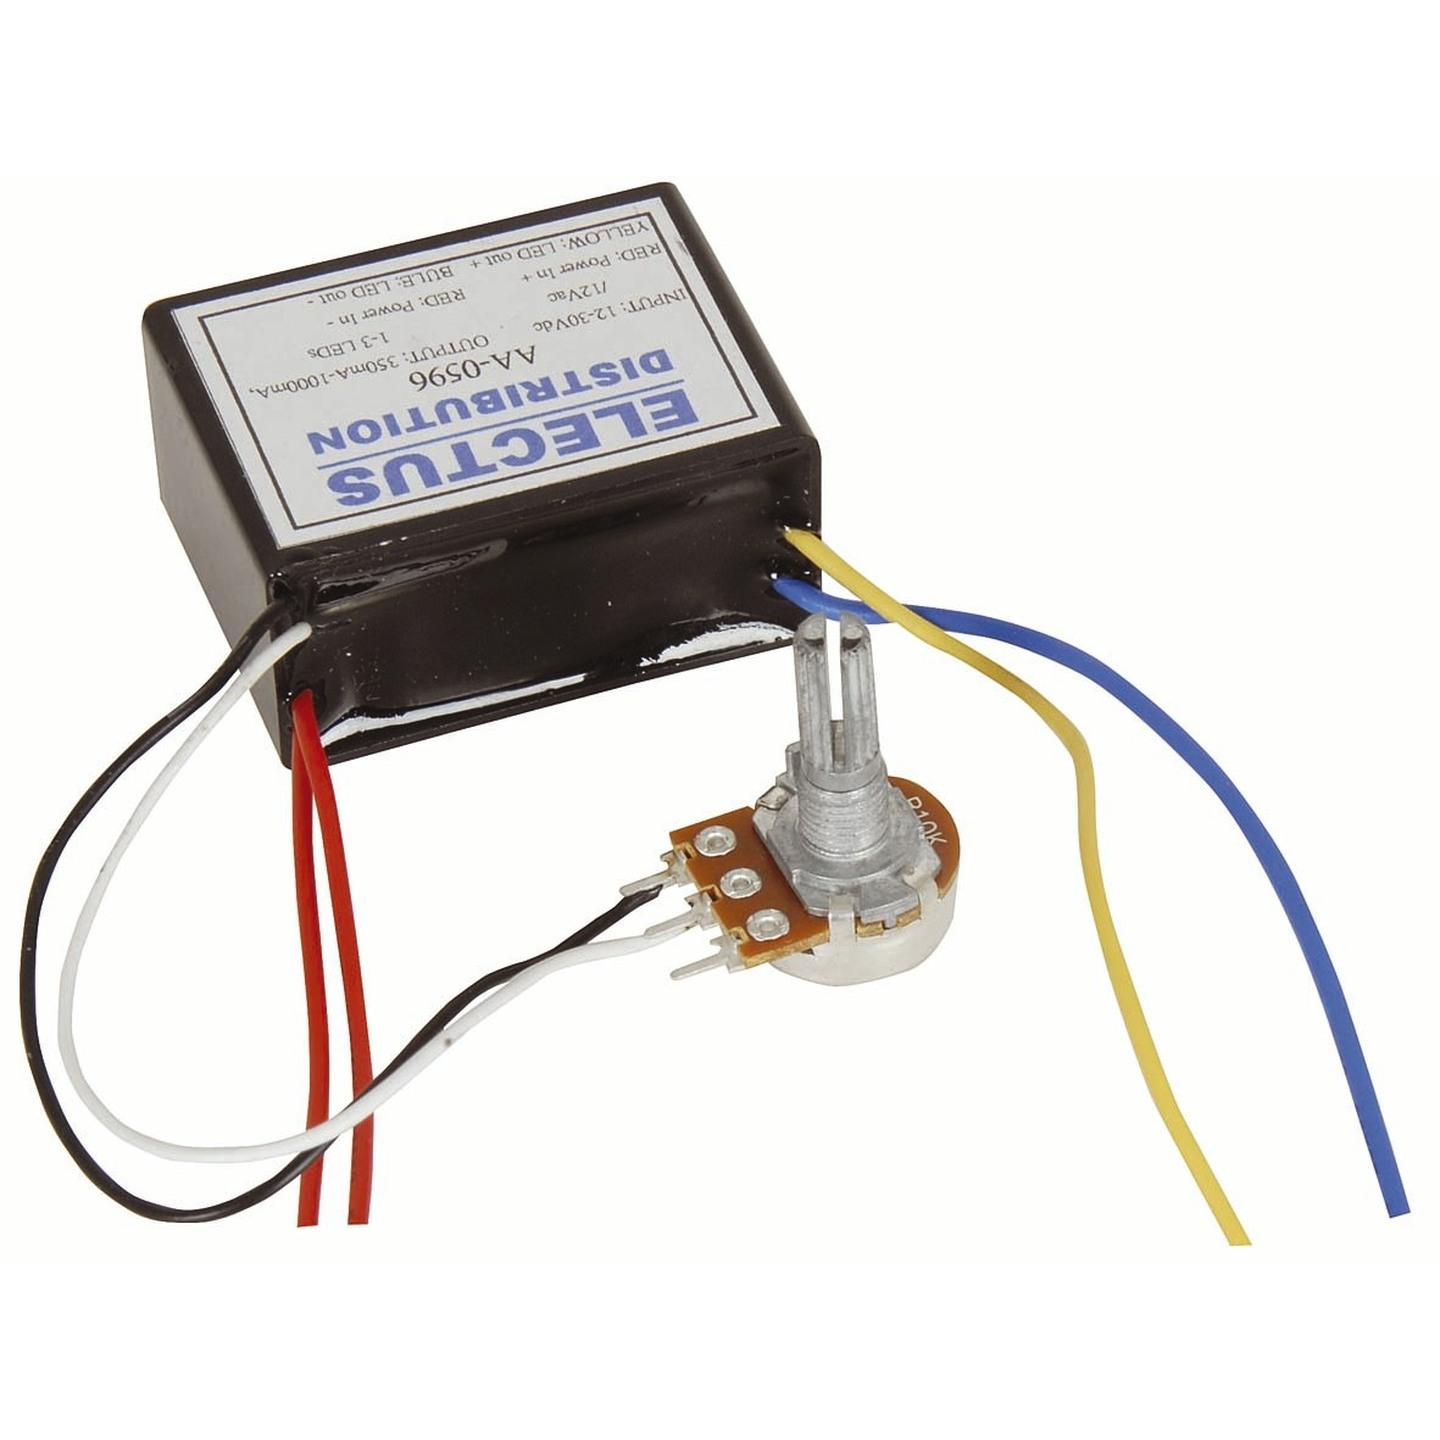 12-30VDC input LED Driver